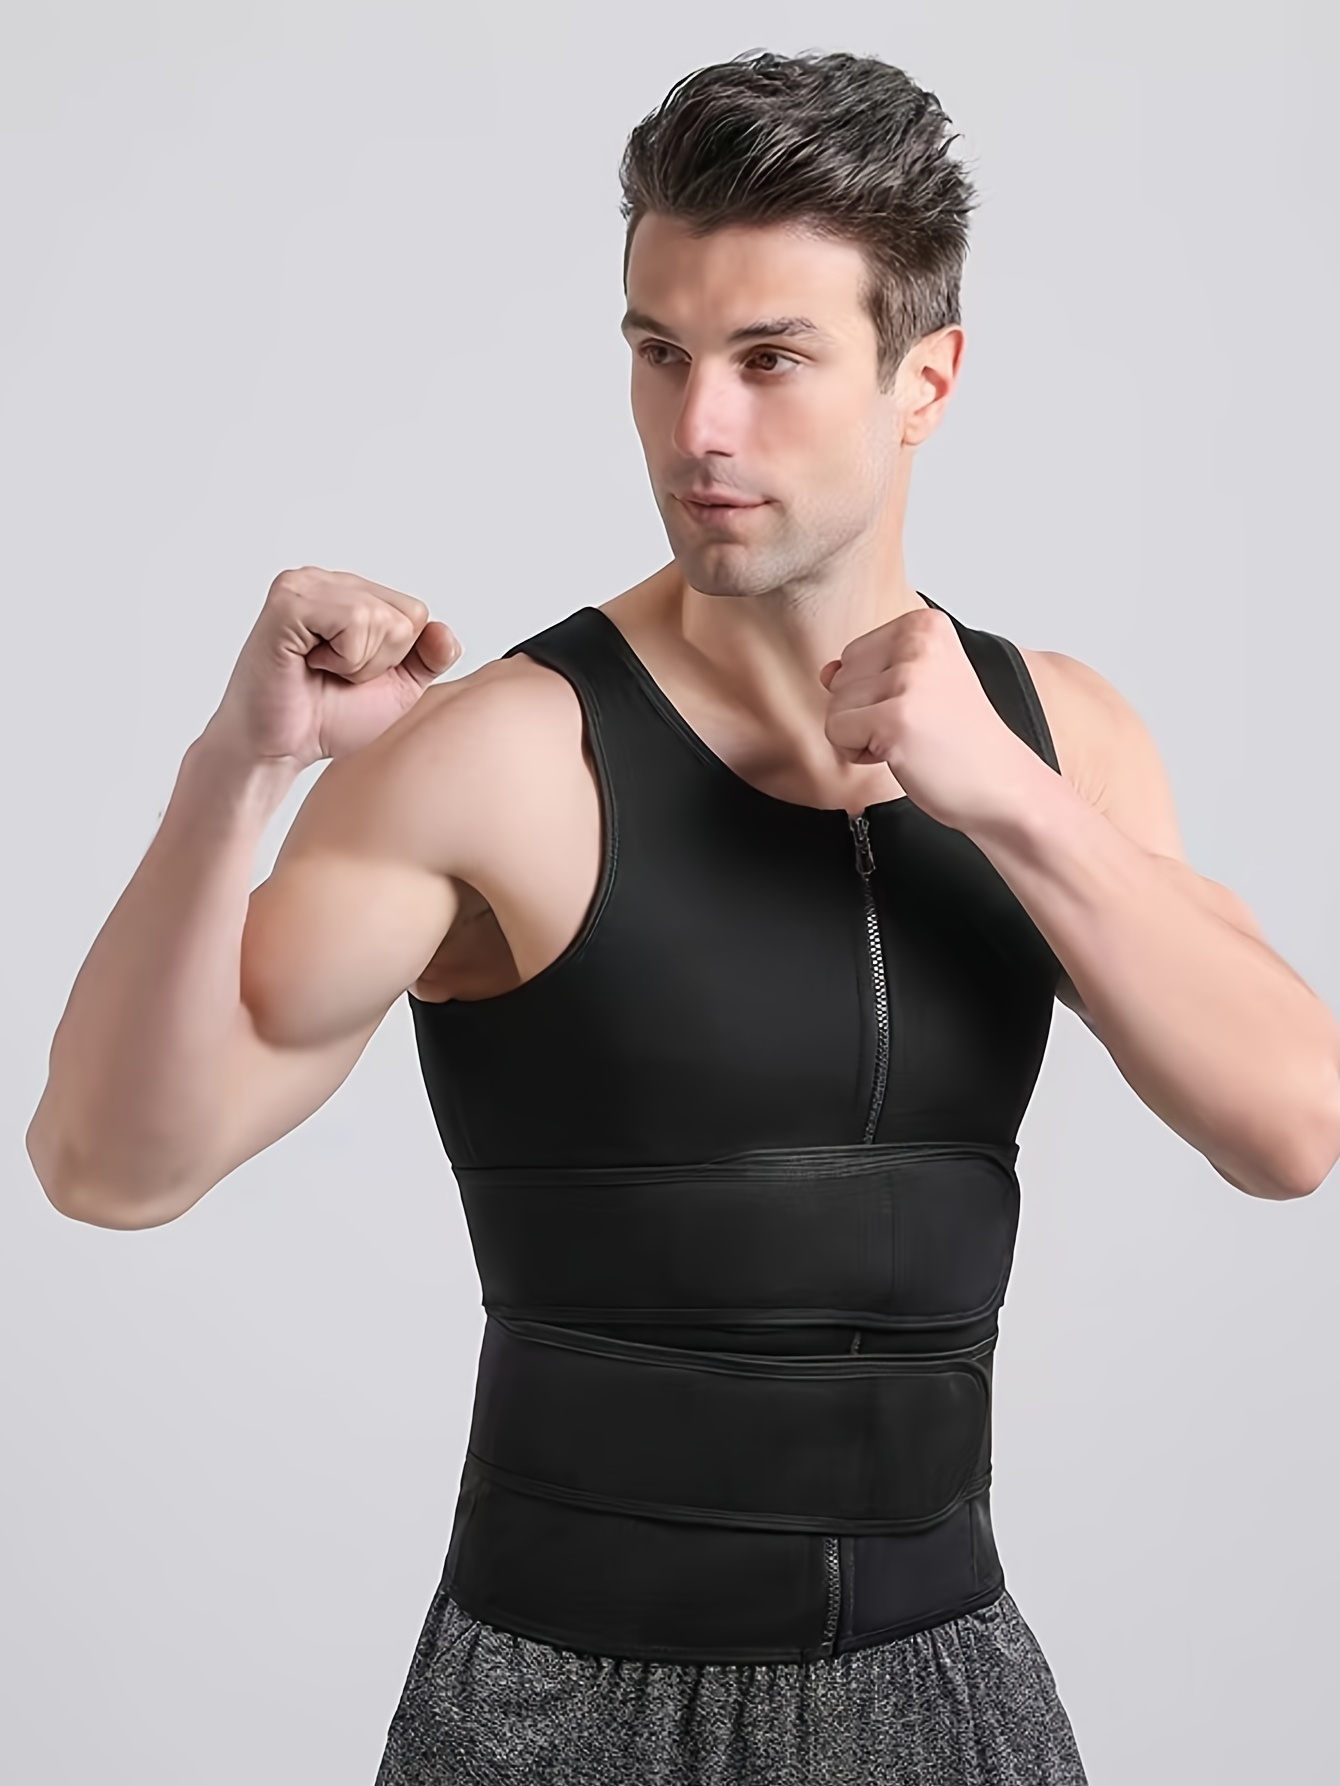 Body Shaper Belt Slimming Sheath Belly Reducing Shaper Tummy Sweat  Shapewear Workout Shaper For Men